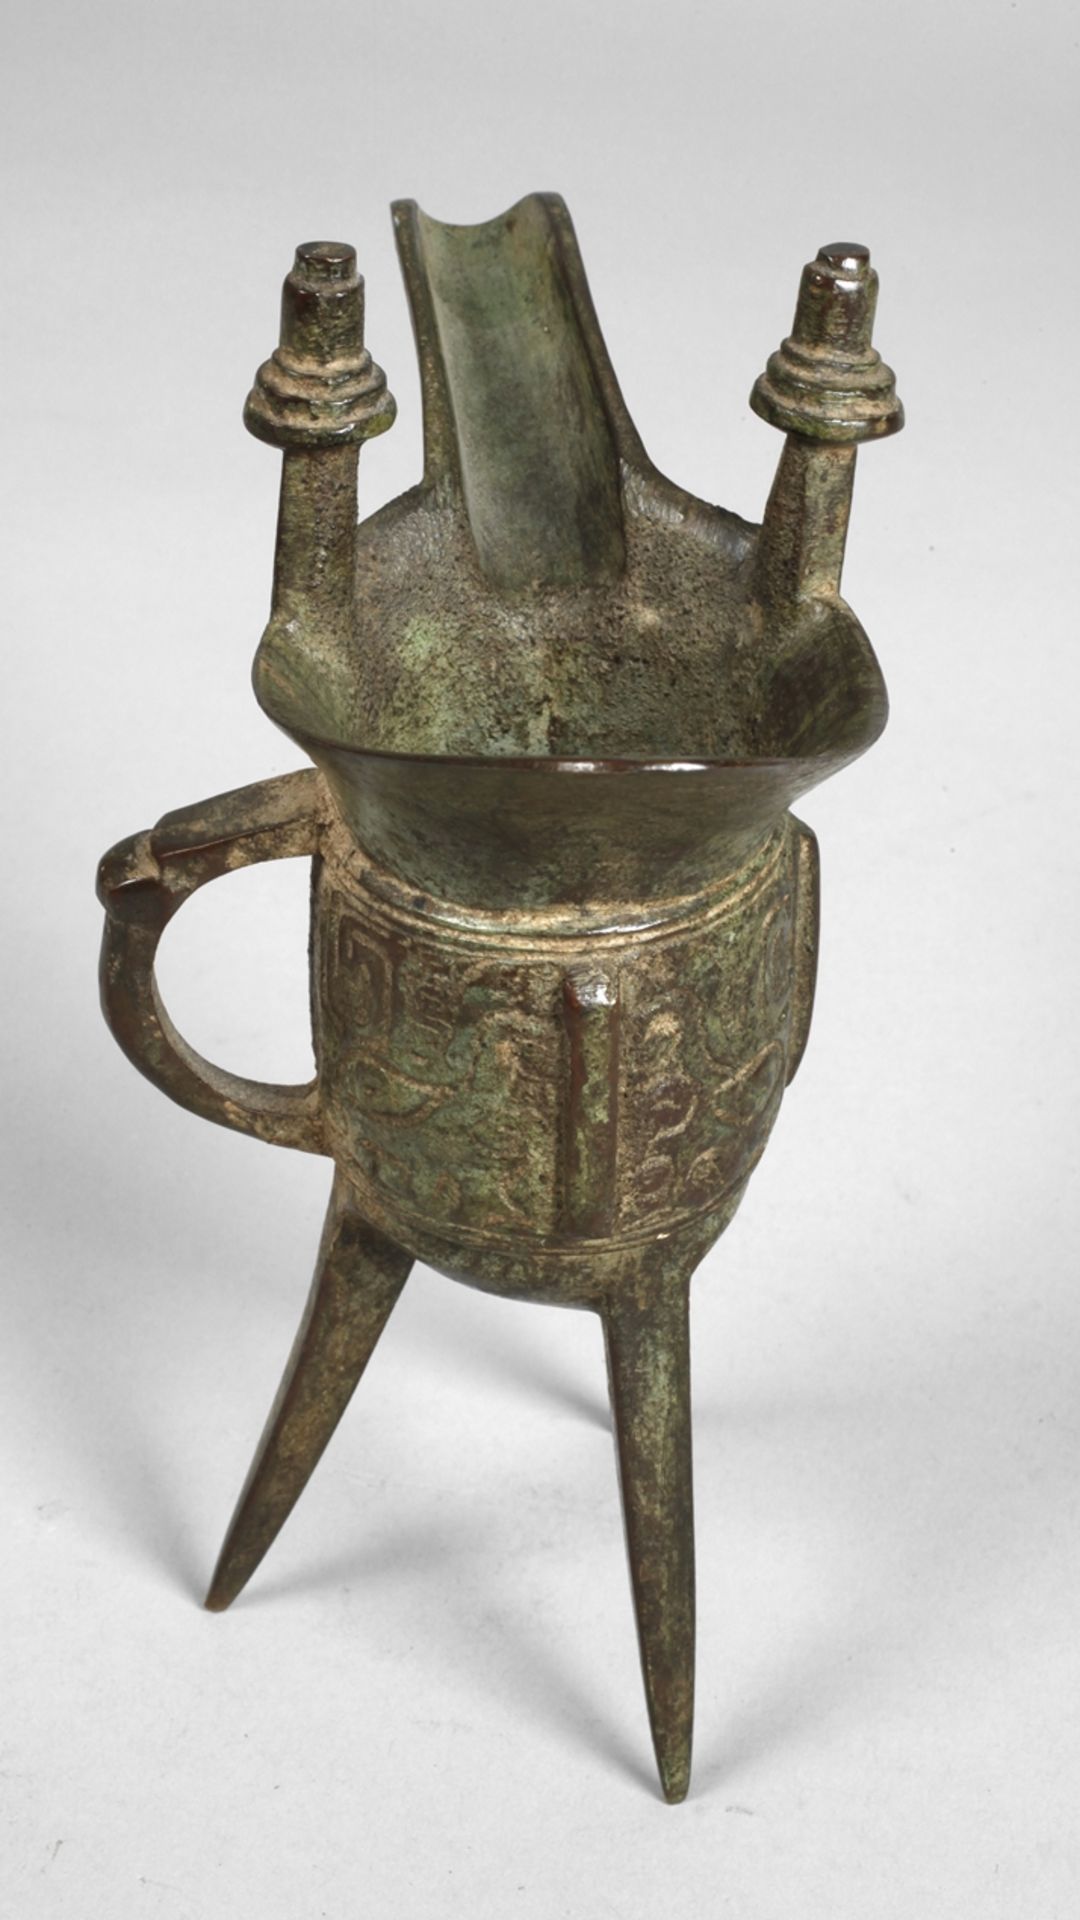 Jue ritual vessel, bronze